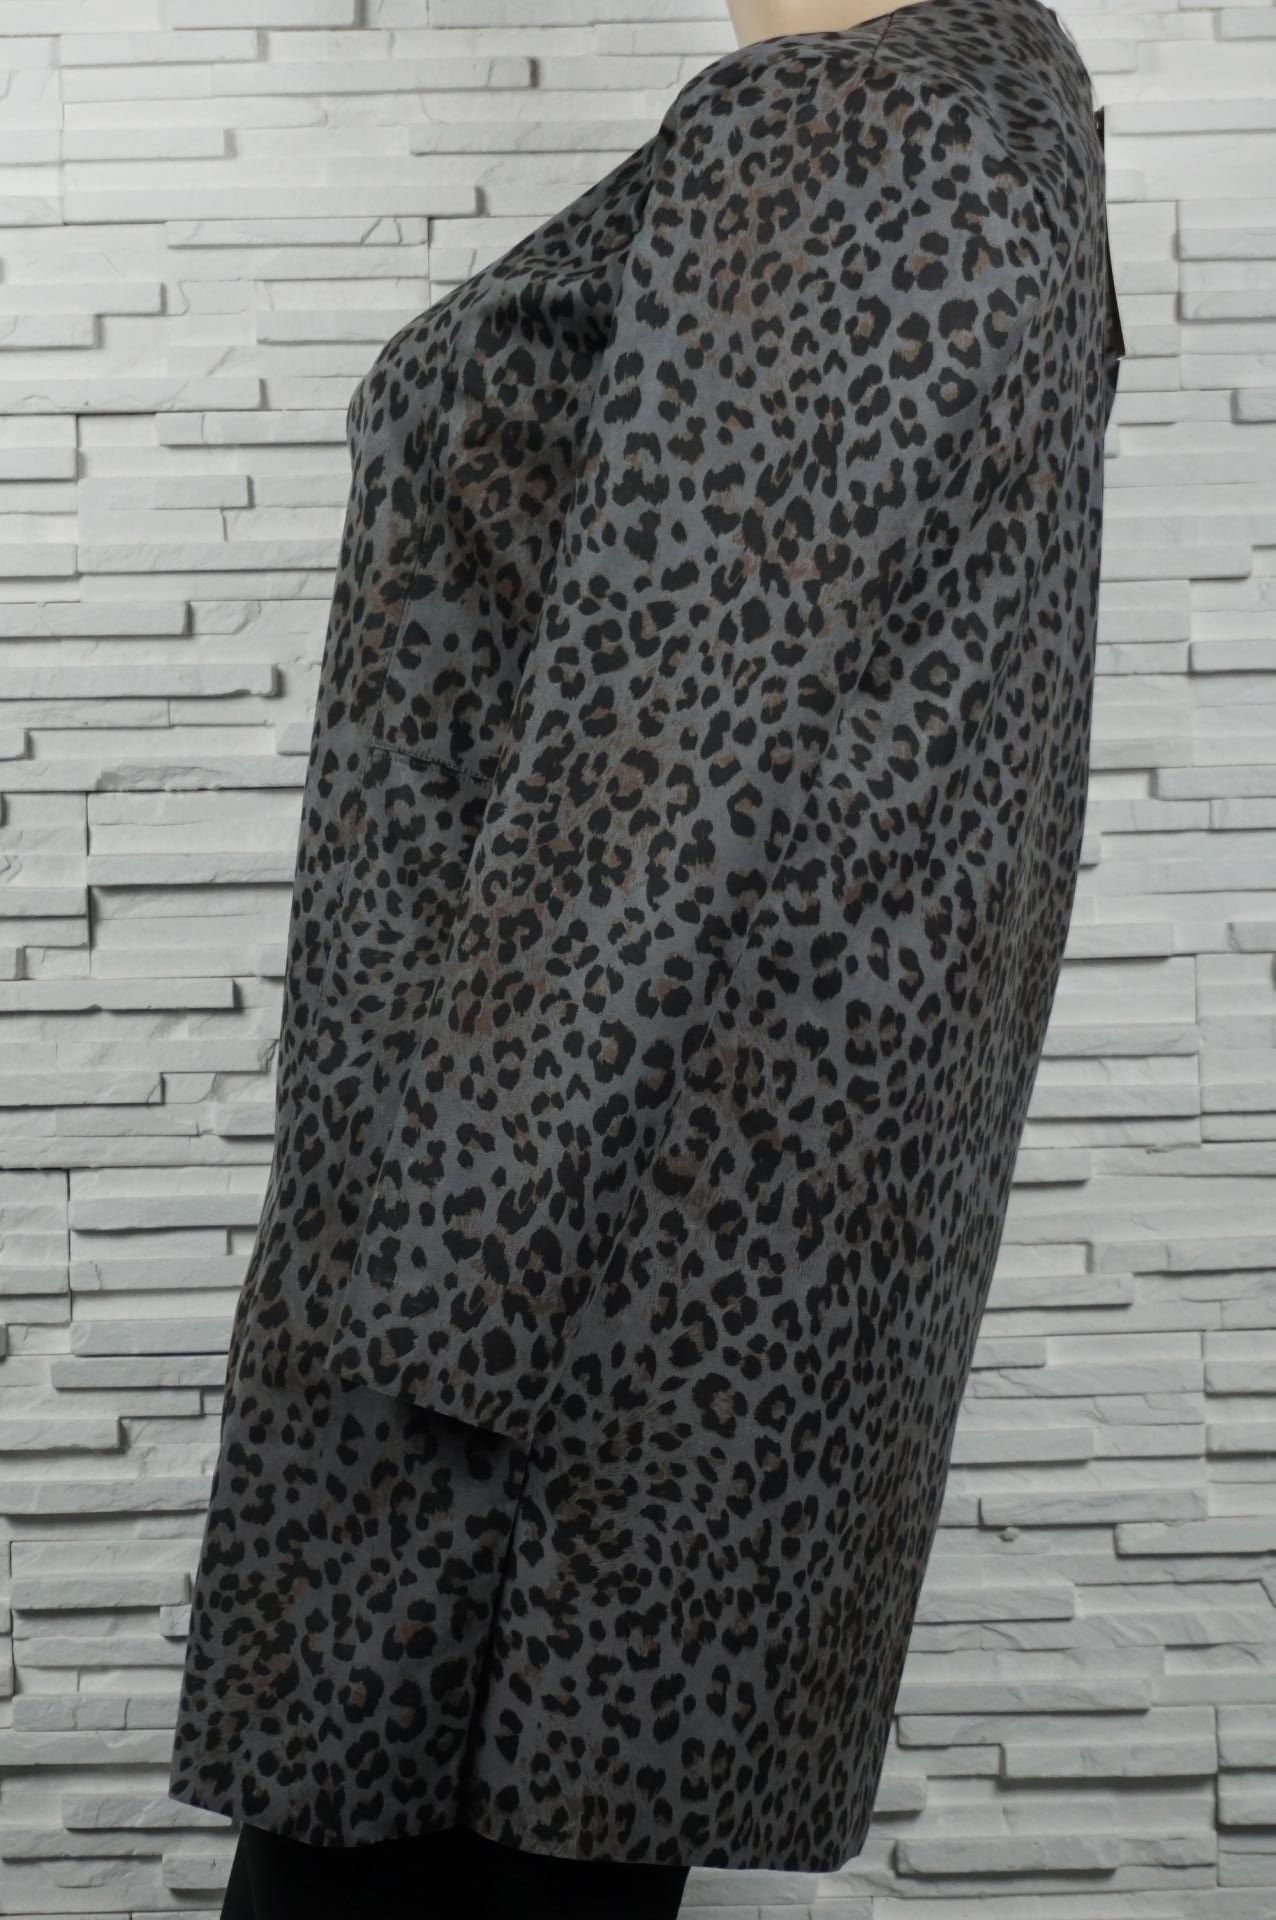 Veste en suédine imprimé léopard.